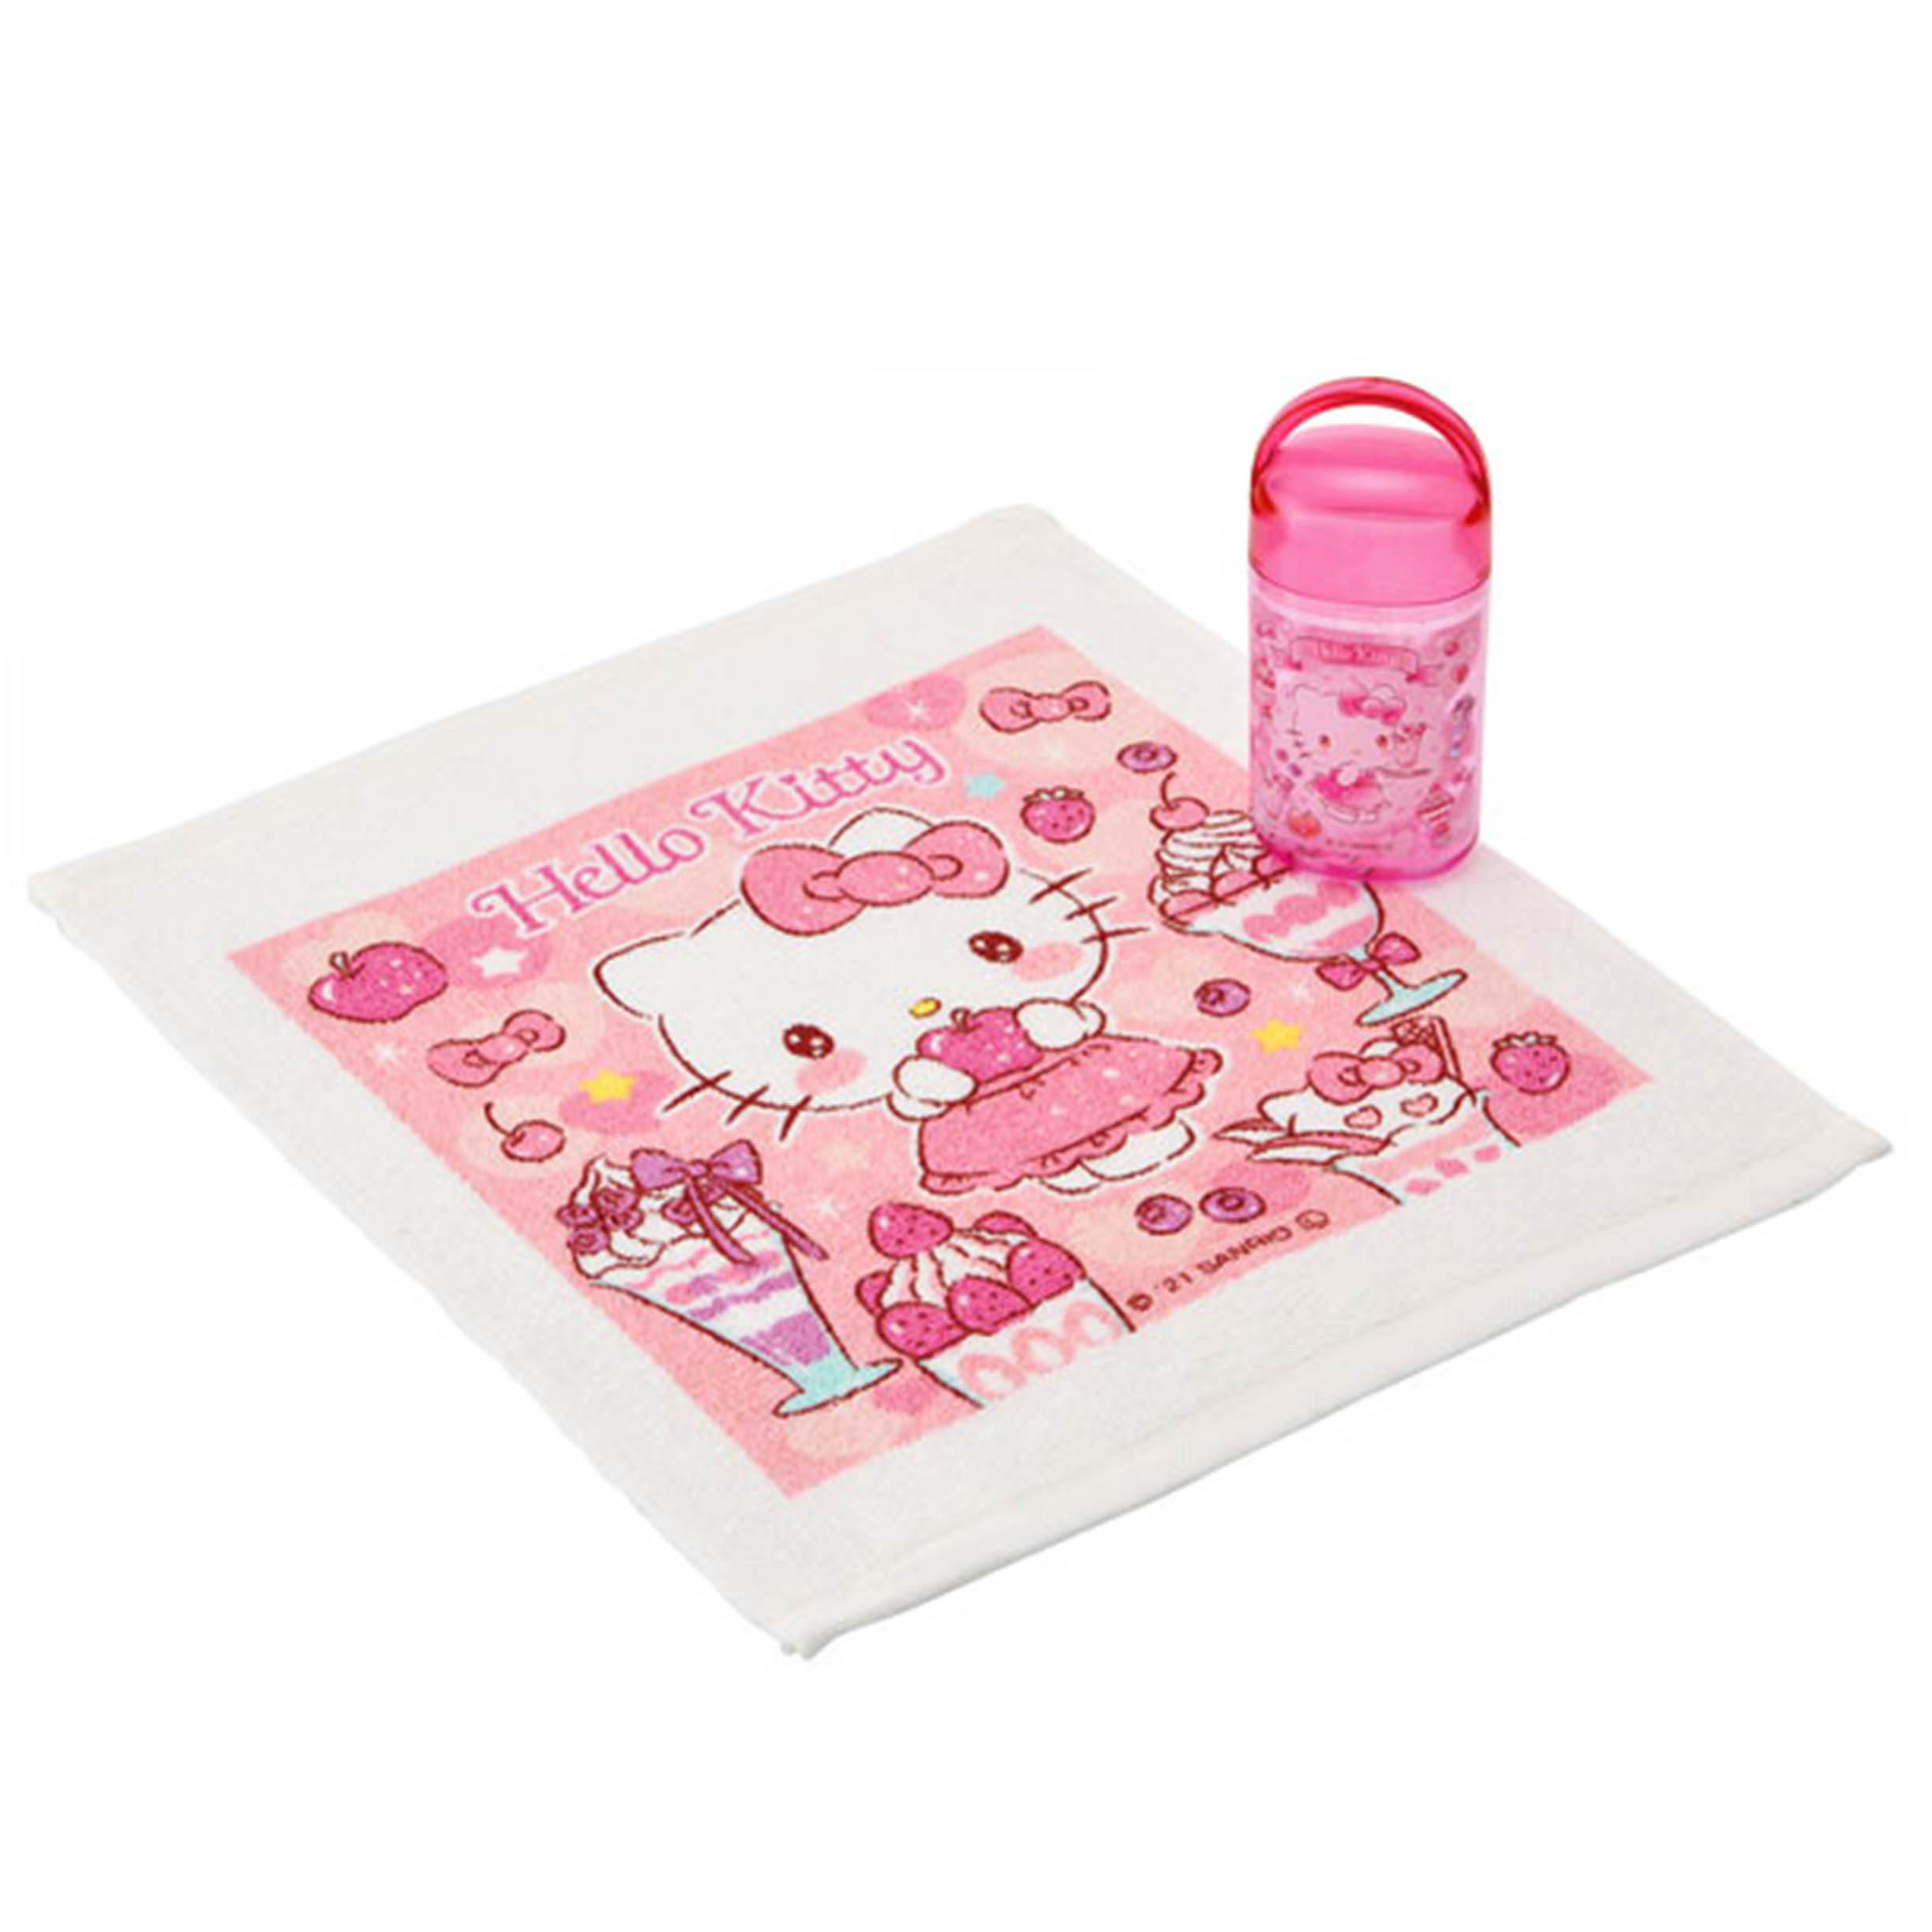 純棉方巾附罐-抗菌Ag+ SIAA 凱蒂貓 HELLO KITTY 三麗鷗 Sanrio 日本進口正版授權